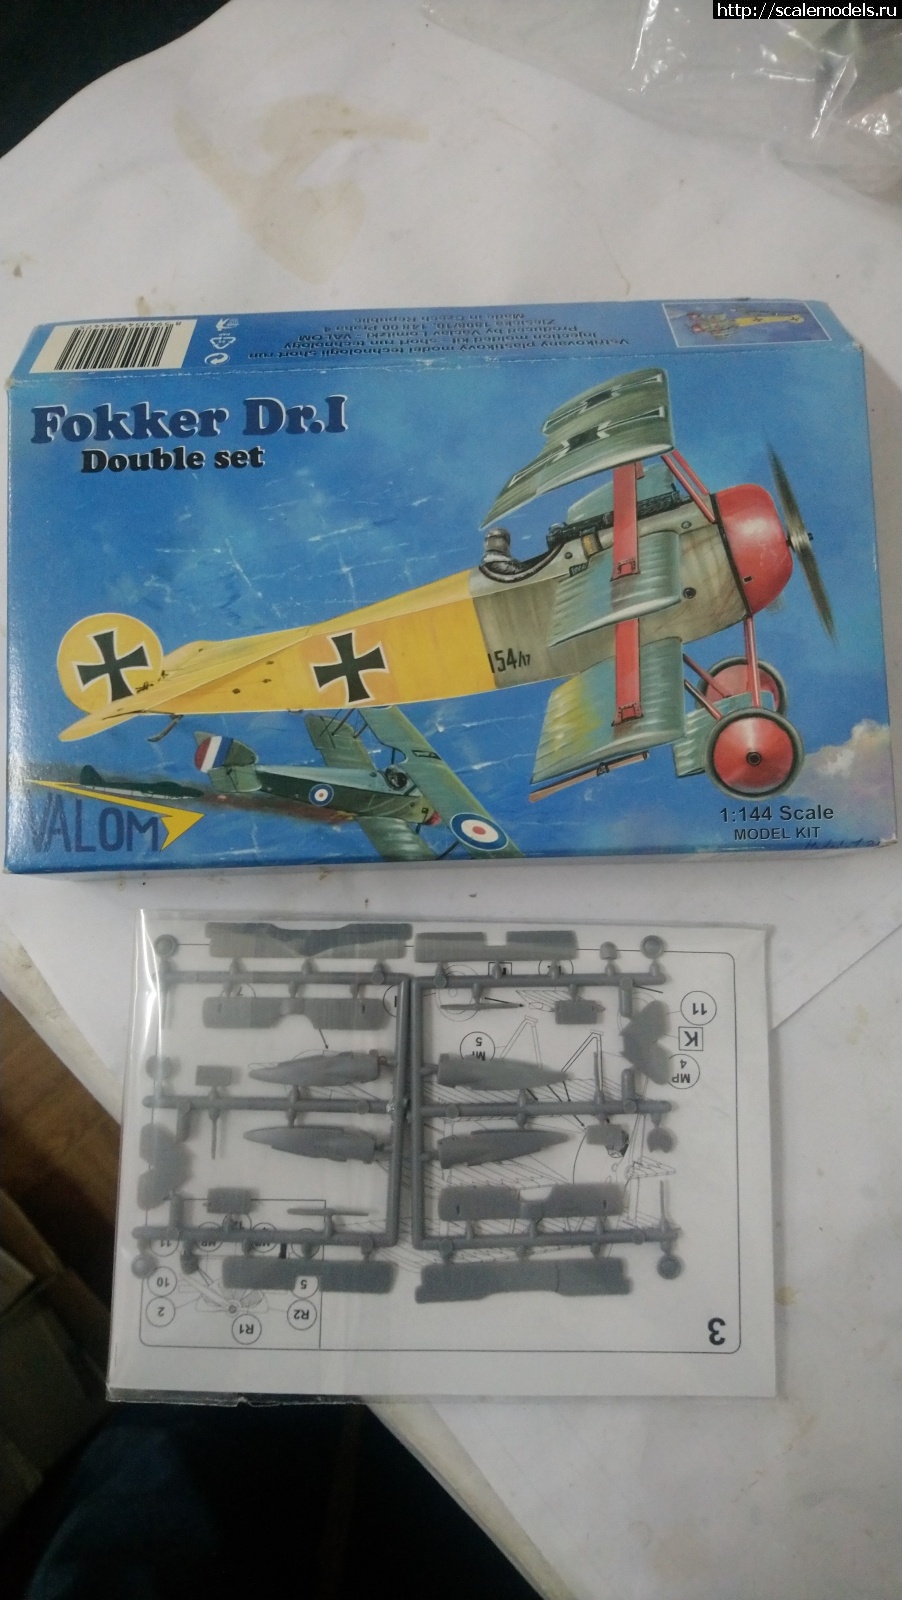 1573859779_DSC_1046.JPG : Fokker Dr. I, Valom 1/144, !  